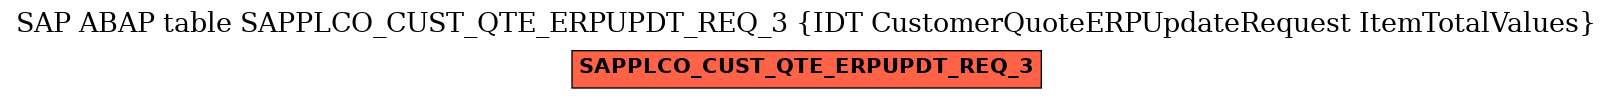 E-R Diagram for table SAPPLCO_CUST_QTE_ERPUPDT_REQ_3 (IDT CustomerQuoteERPUpdateRequest ItemTotalValues)